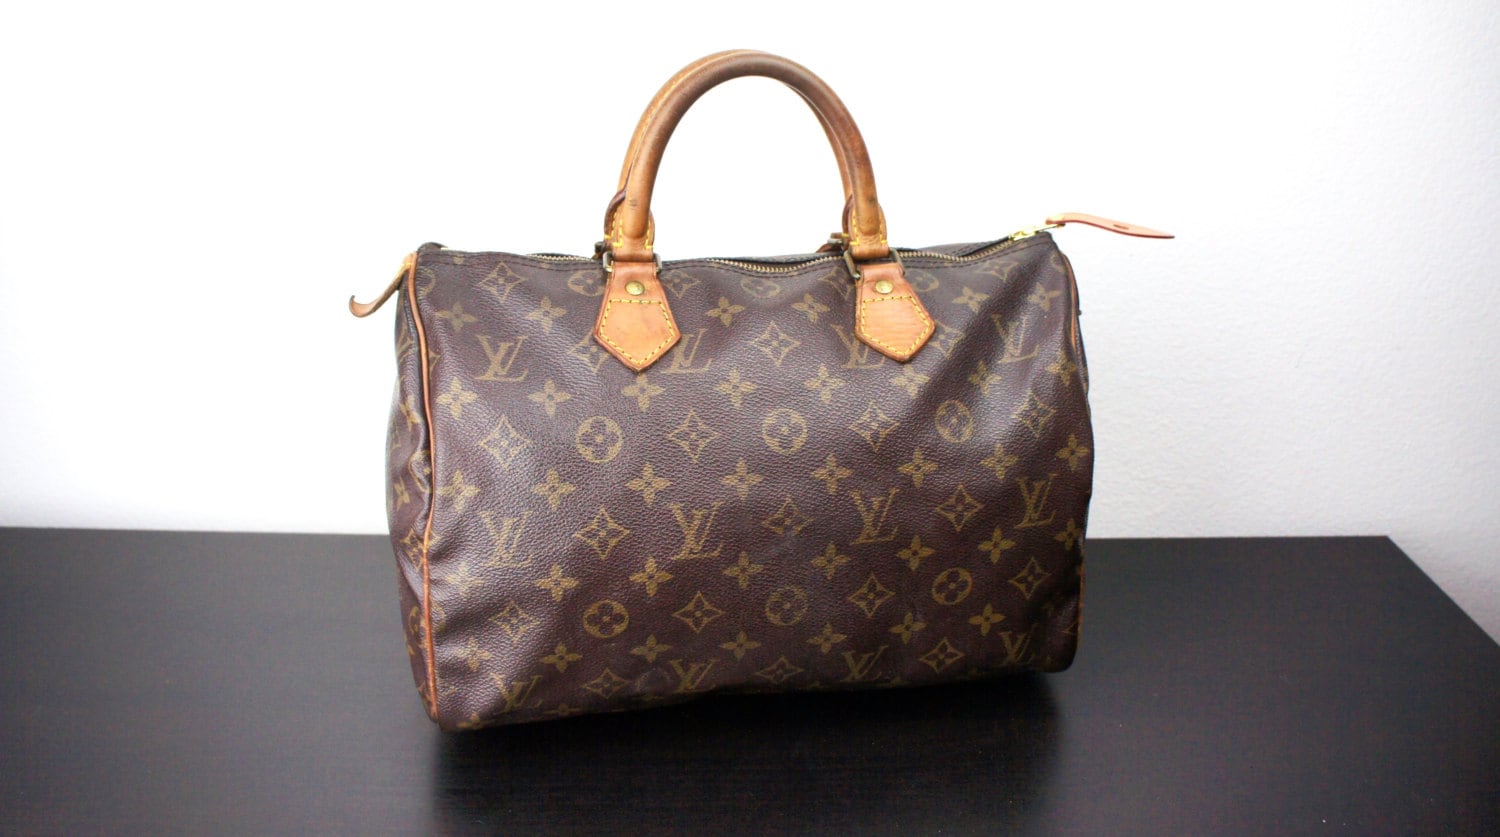 Vintage Louis Vuitton Speedy Bag Size 30 Medium Brown